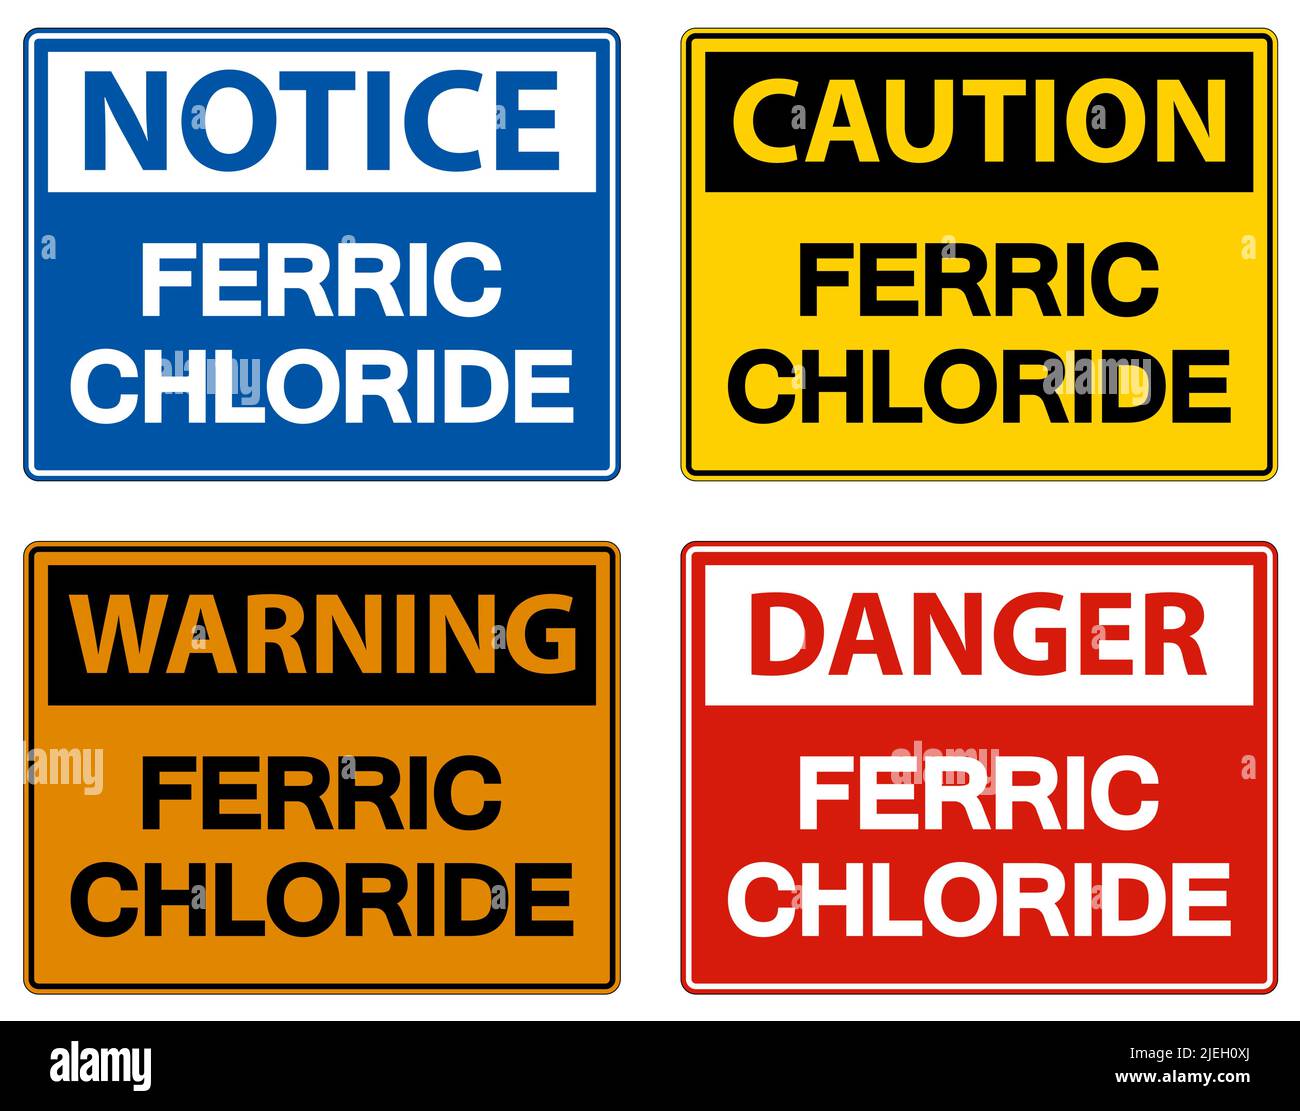 Danger chimique symbole de chlorure ferrique sur fond blanc Illustration de Vecteur